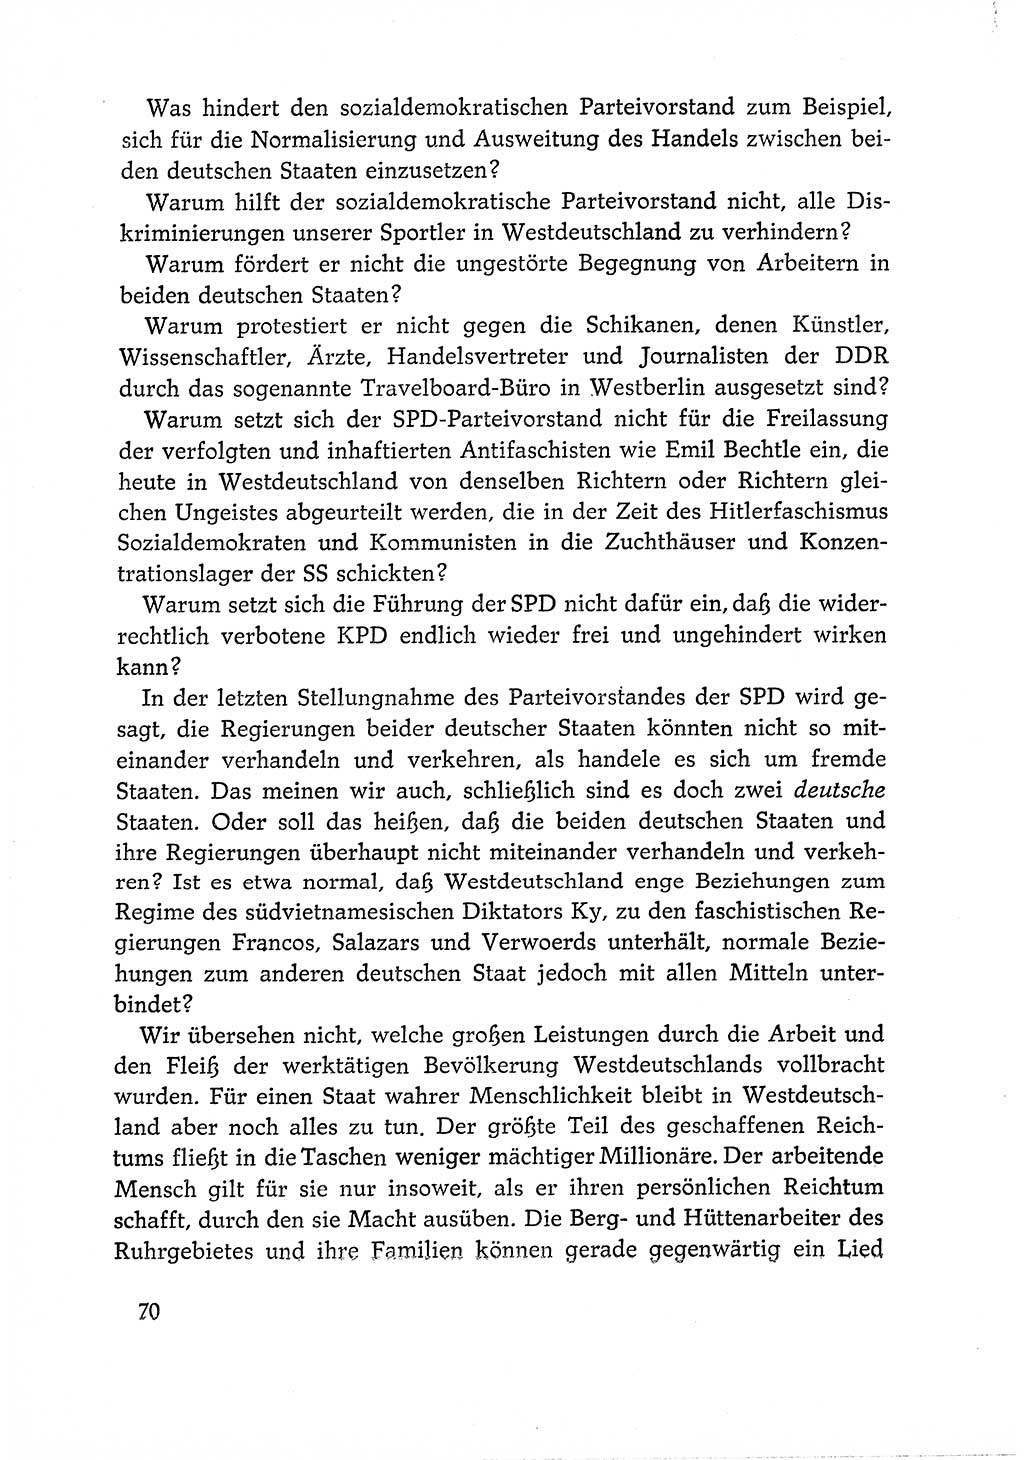 Dokumente der Sozialistischen Einheitspartei Deutschlands (SED) [Deutsche Demokratische Republik (DDR)] 1966-1967, Seite 70 (Dok. SED DDR 1966-1967, S. 70)